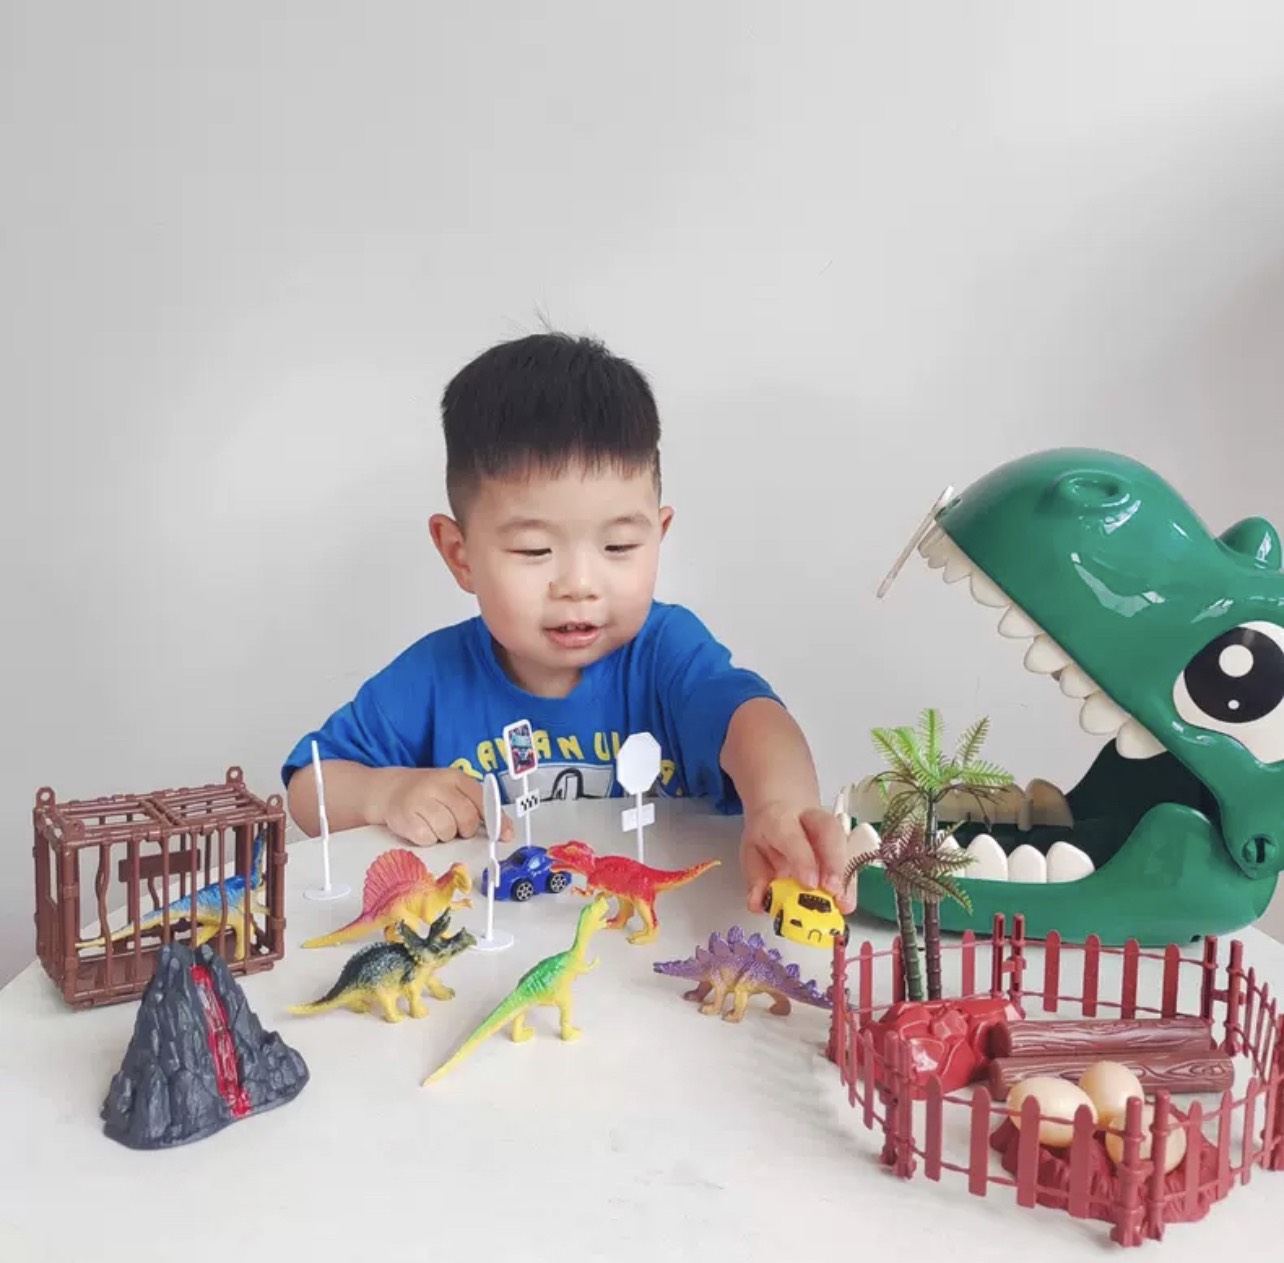 Balo kèm bộ đồ chơi khủng long cho bé